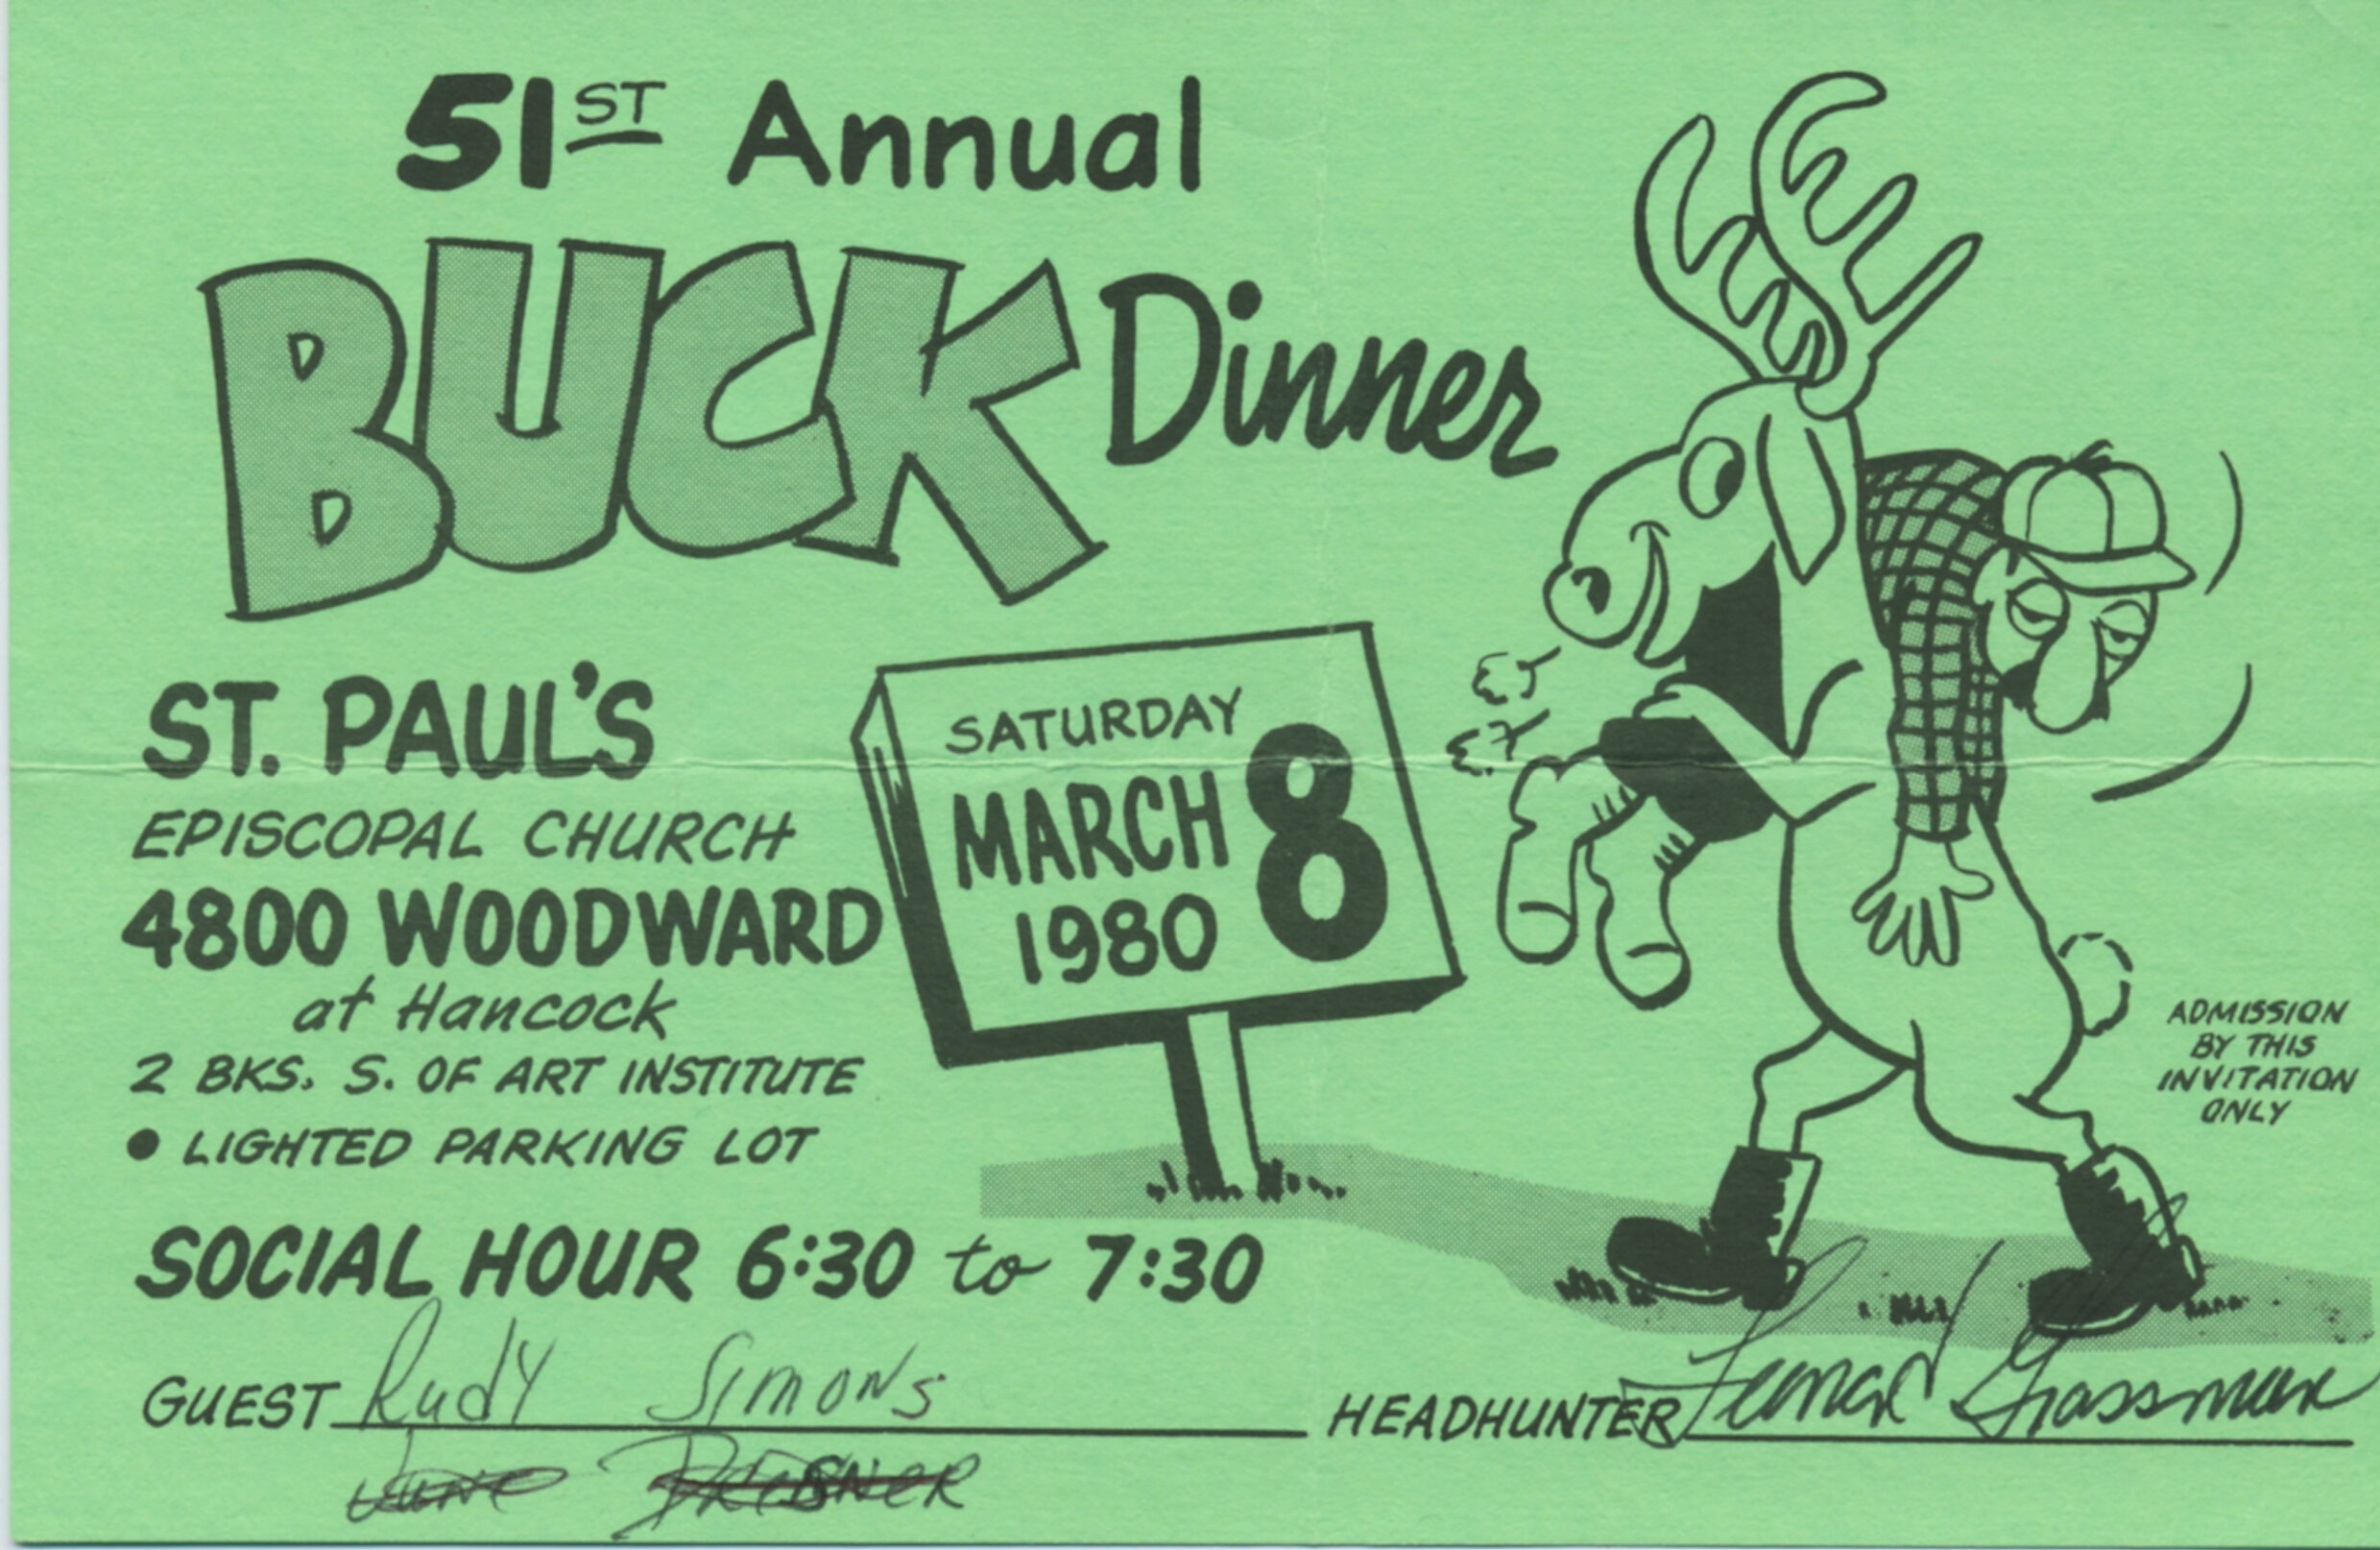 51st Buck Dinner.jpg